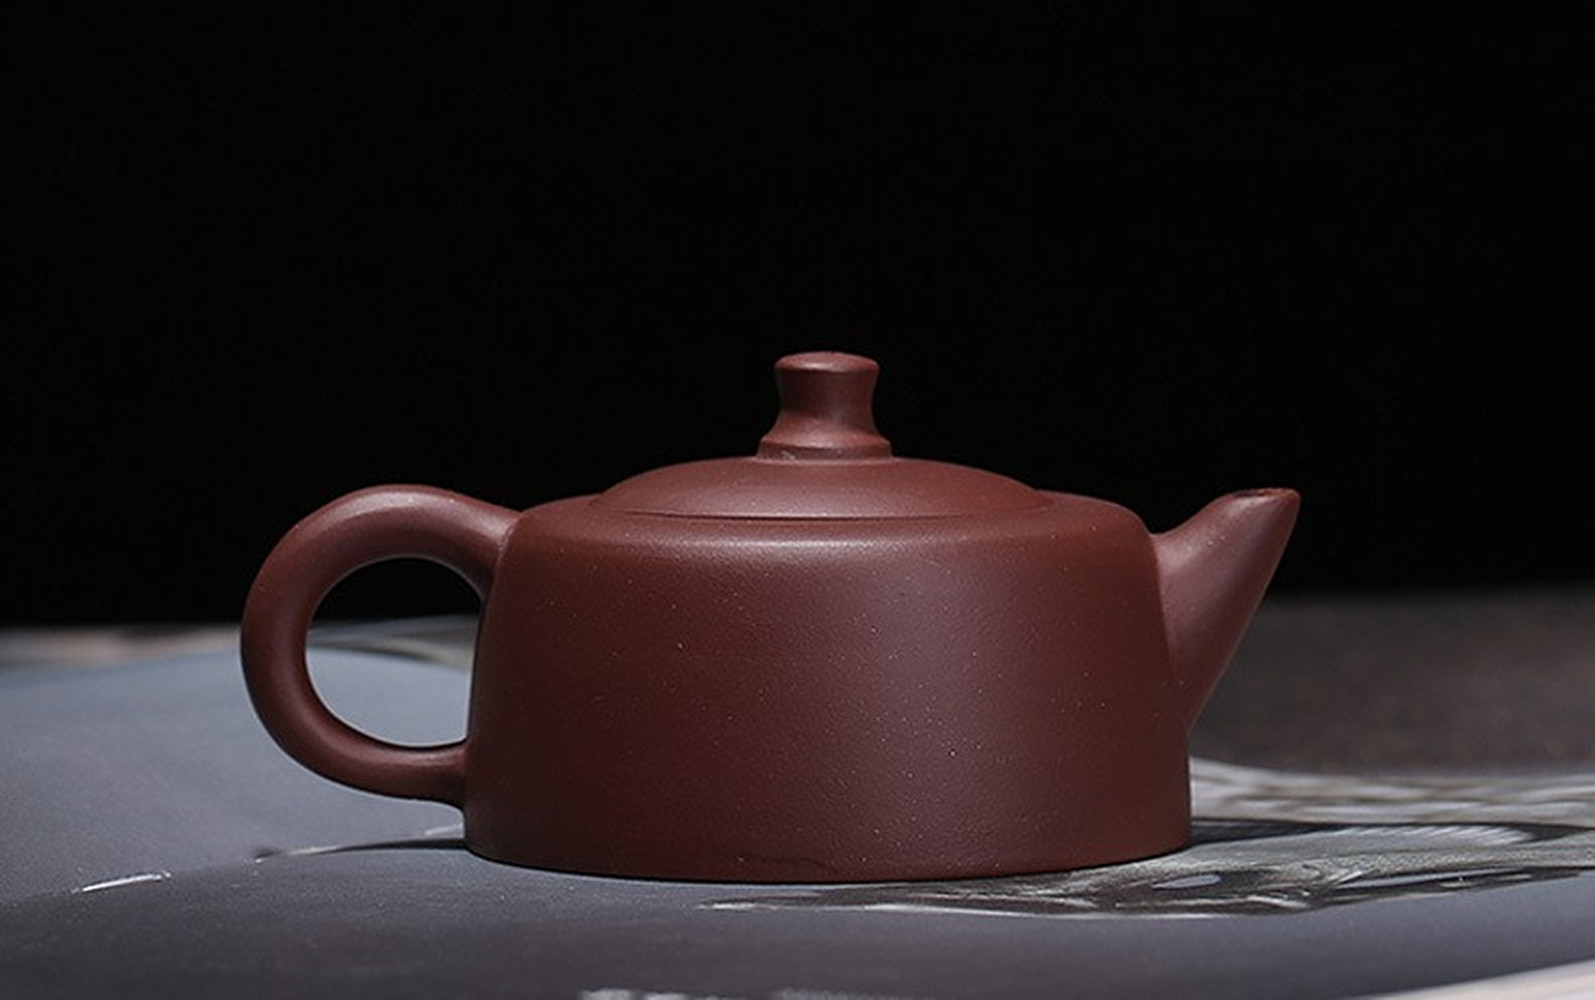 Čínská čajová konvice Jinglan-Čínská Yixing Zisha keramika 2